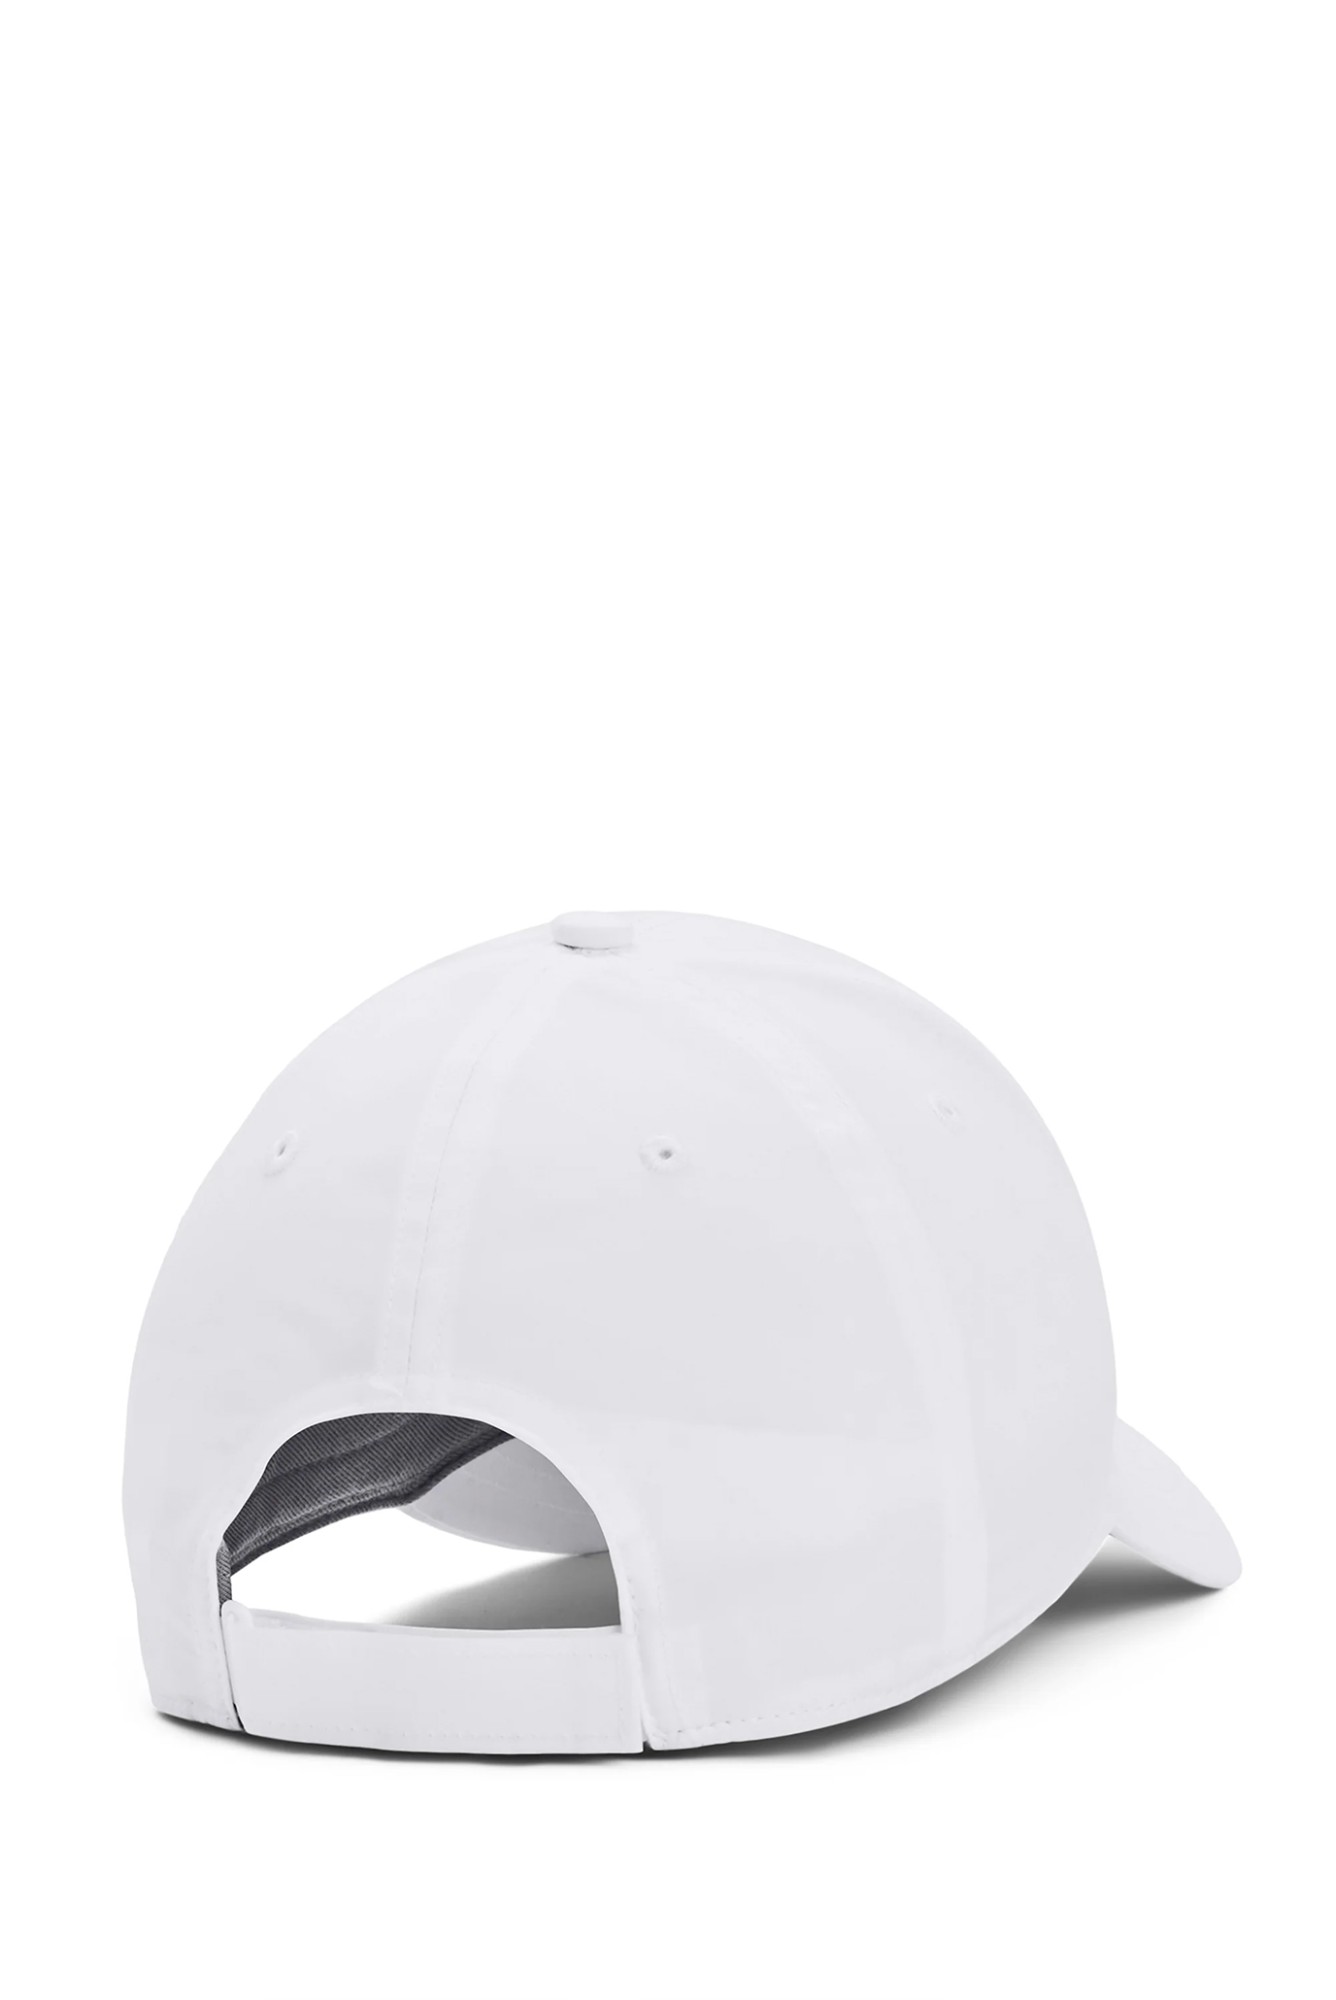 Бейсболка  Under Armour UA Golf96 Hat белая 1361547-101 изображение 3